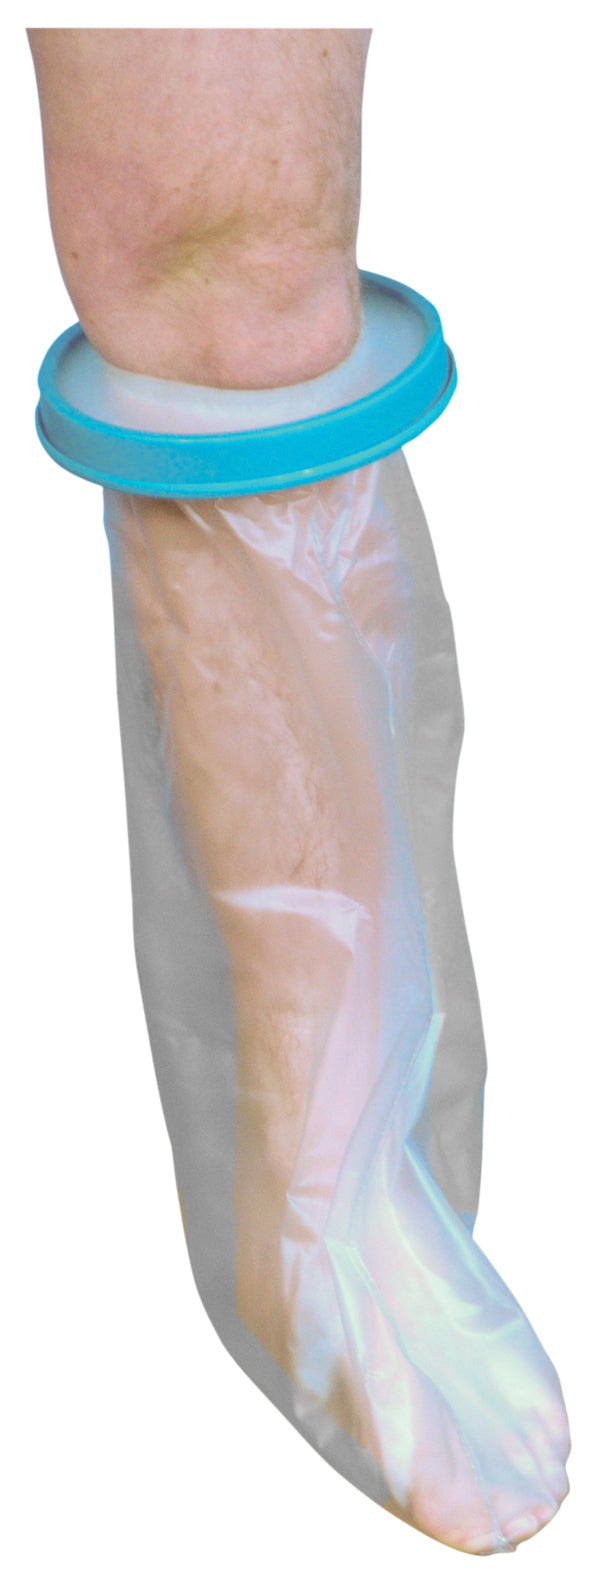 Wodoodporny ochraniacz na gips i bandaż do stosowania podczas prysznica/kąpieli (dorosły – krótka nogawka)